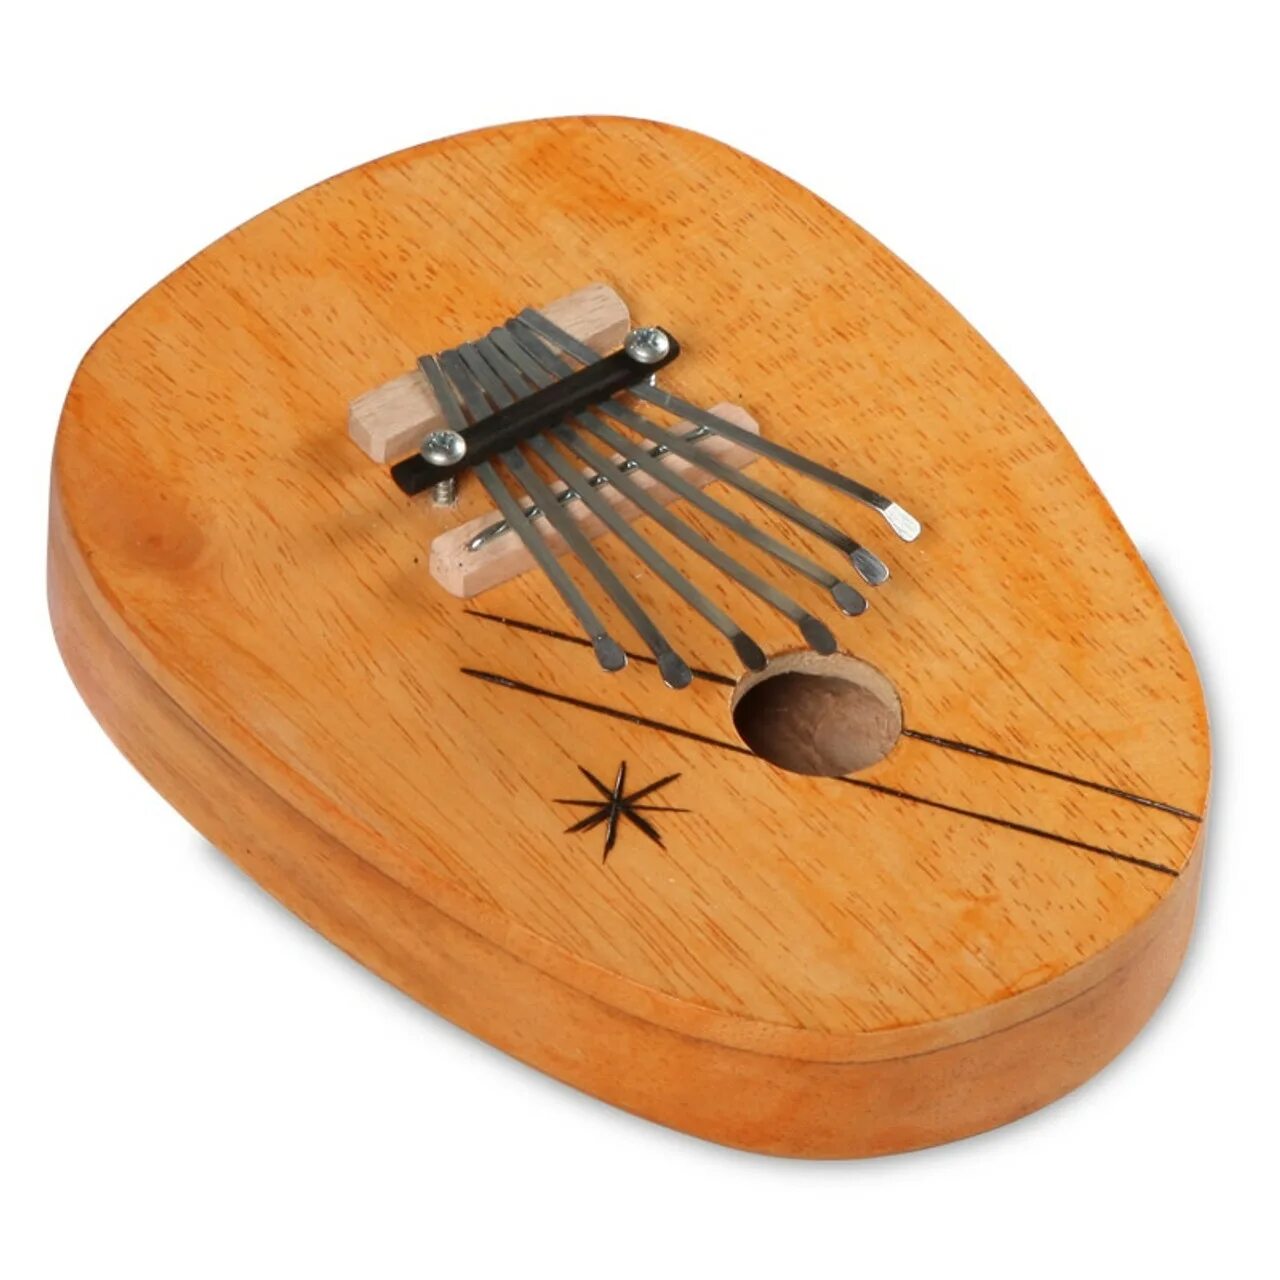 Калимба музыкальный инструмент акриловая. Калимба для детей. Самодельная калимба. Музыкальный инструмент калимба домбра. Калимба как научиться играть